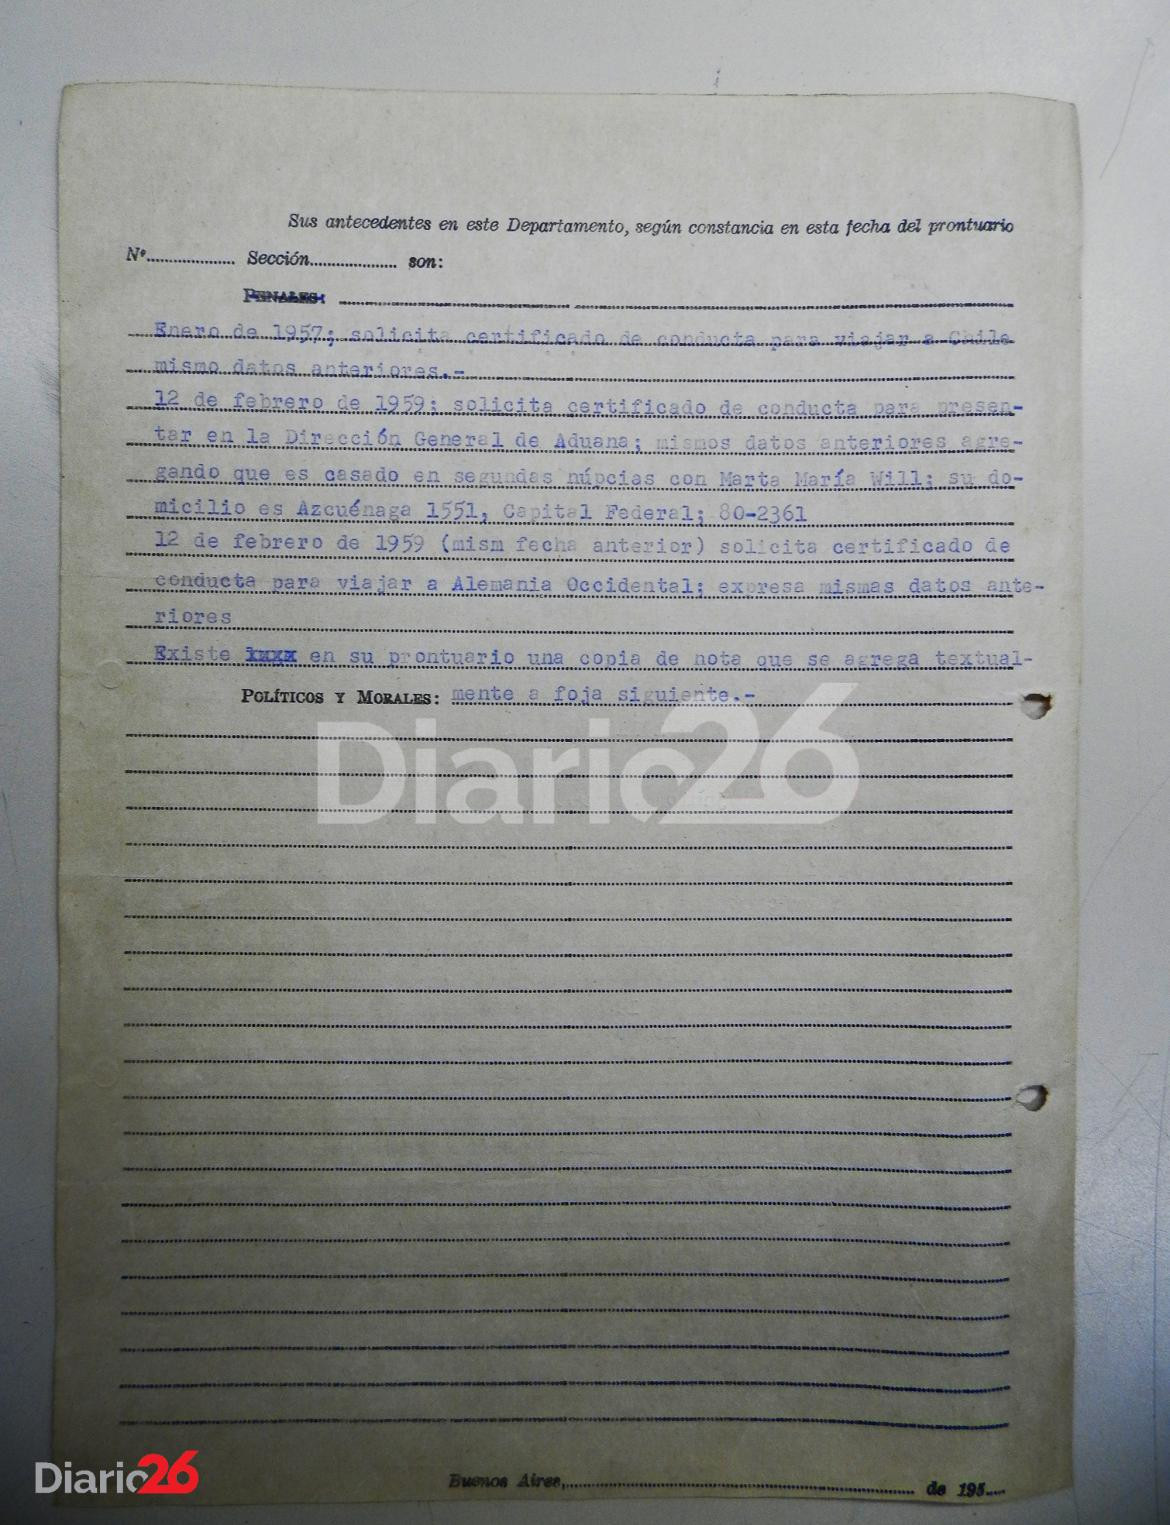 Planilla prontuarial de Josef Mengele con datos de filiación originales tras recuperar su verdadera identidad. Año 1956